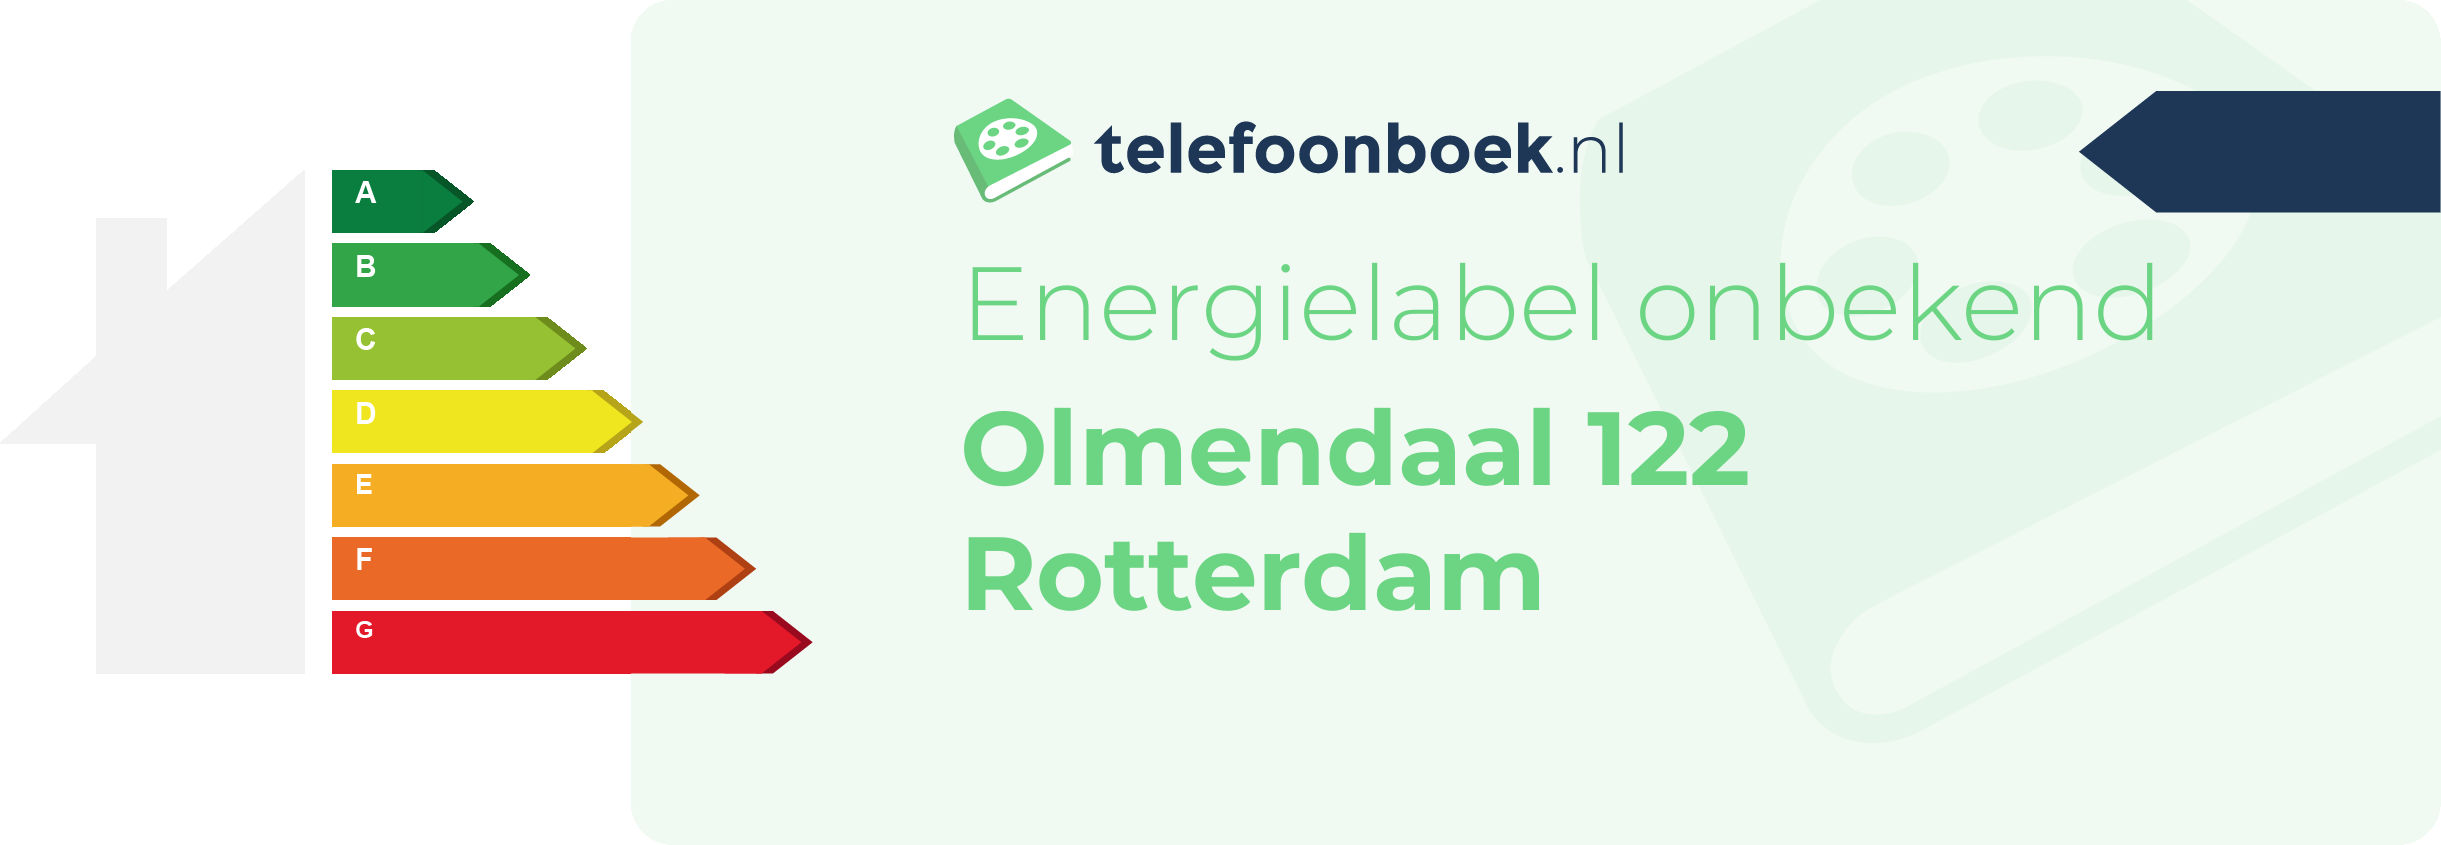 Energielabel Olmendaal 122 Rotterdam